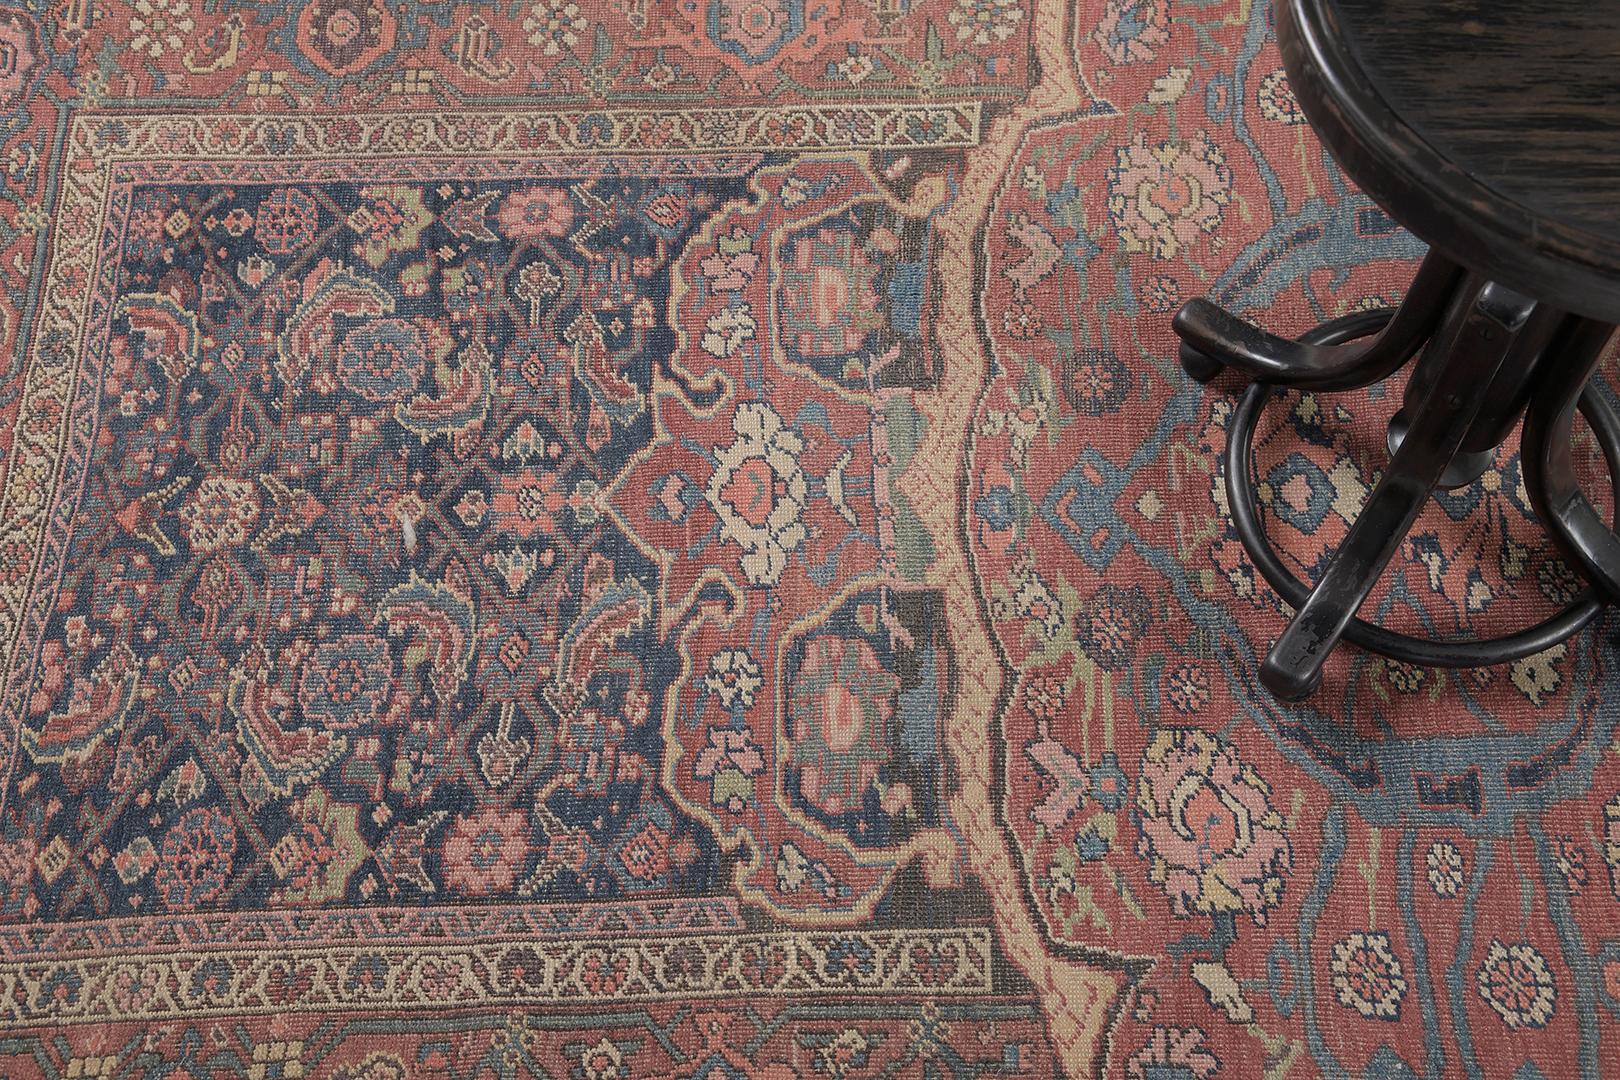 Ein faszinierender antiker persischer Bidjar-Teppich mit verschiedenen botanischen Elementen wie üppigen Palmetten, Herati-Mustern und sich schlängelnden Ranken in den prächtigen Farben Marineblau, Altrosa und Beige. Dieser phänomenale Teppich